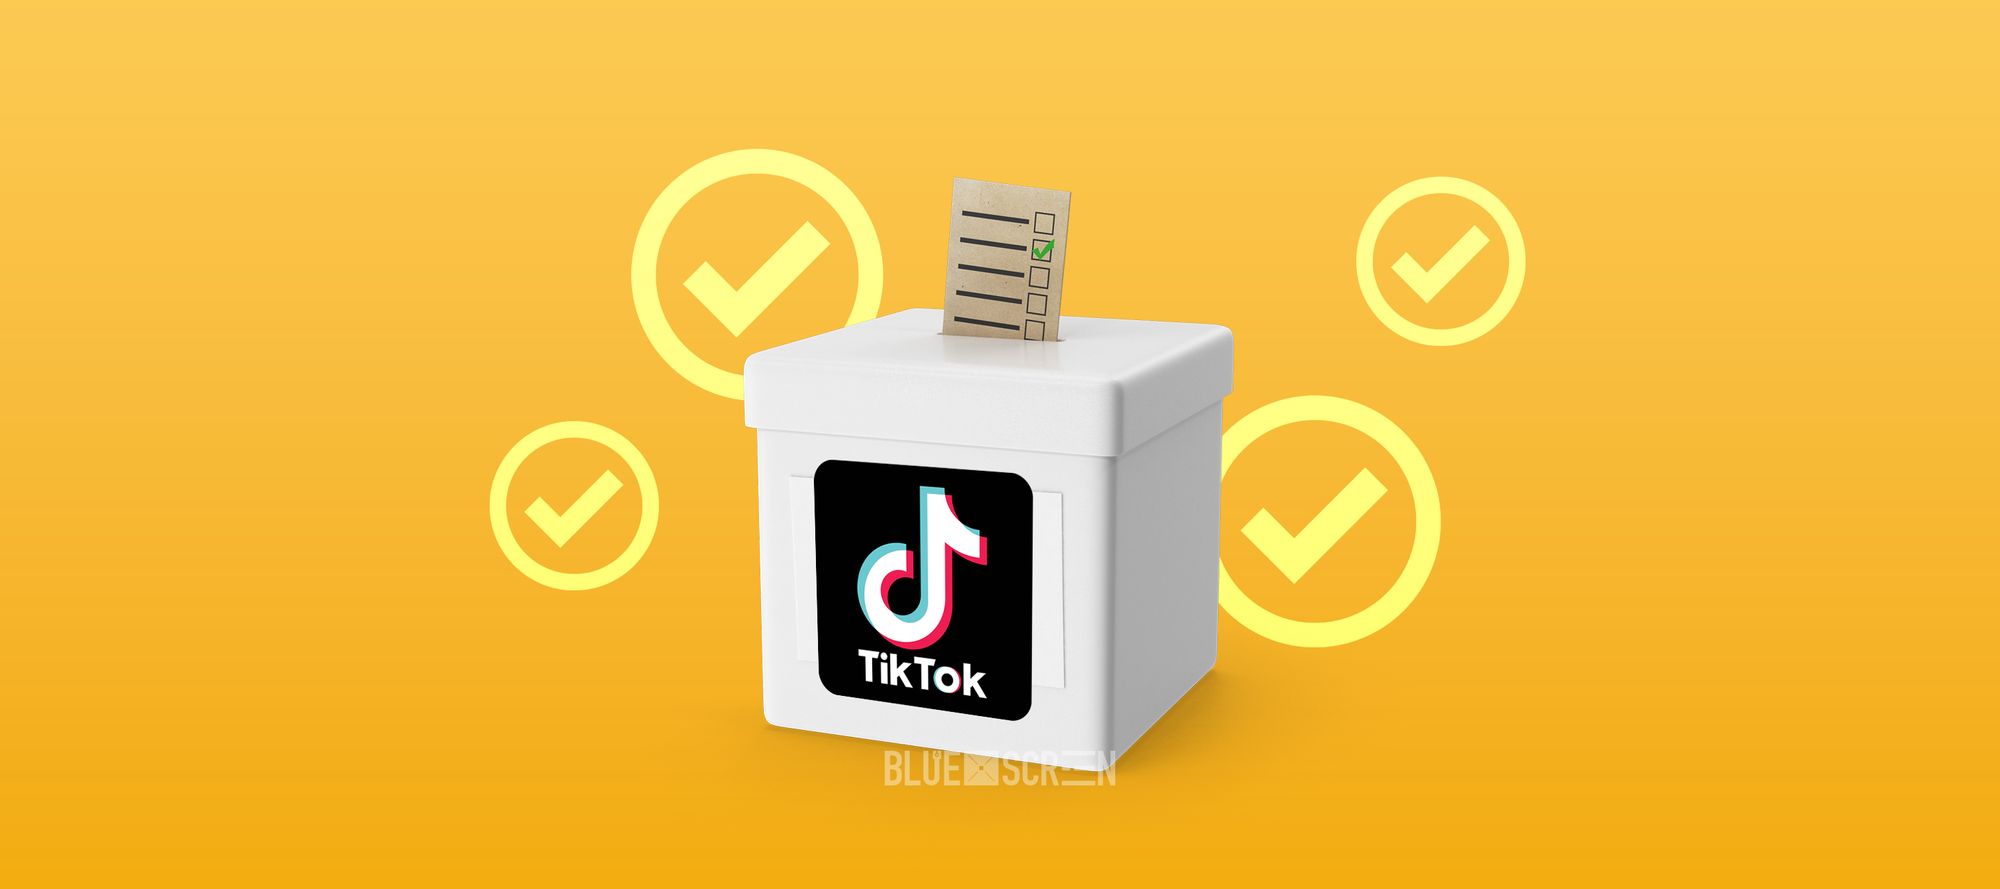 TikTok обеспечит достоверность контента о Парламентских выборах